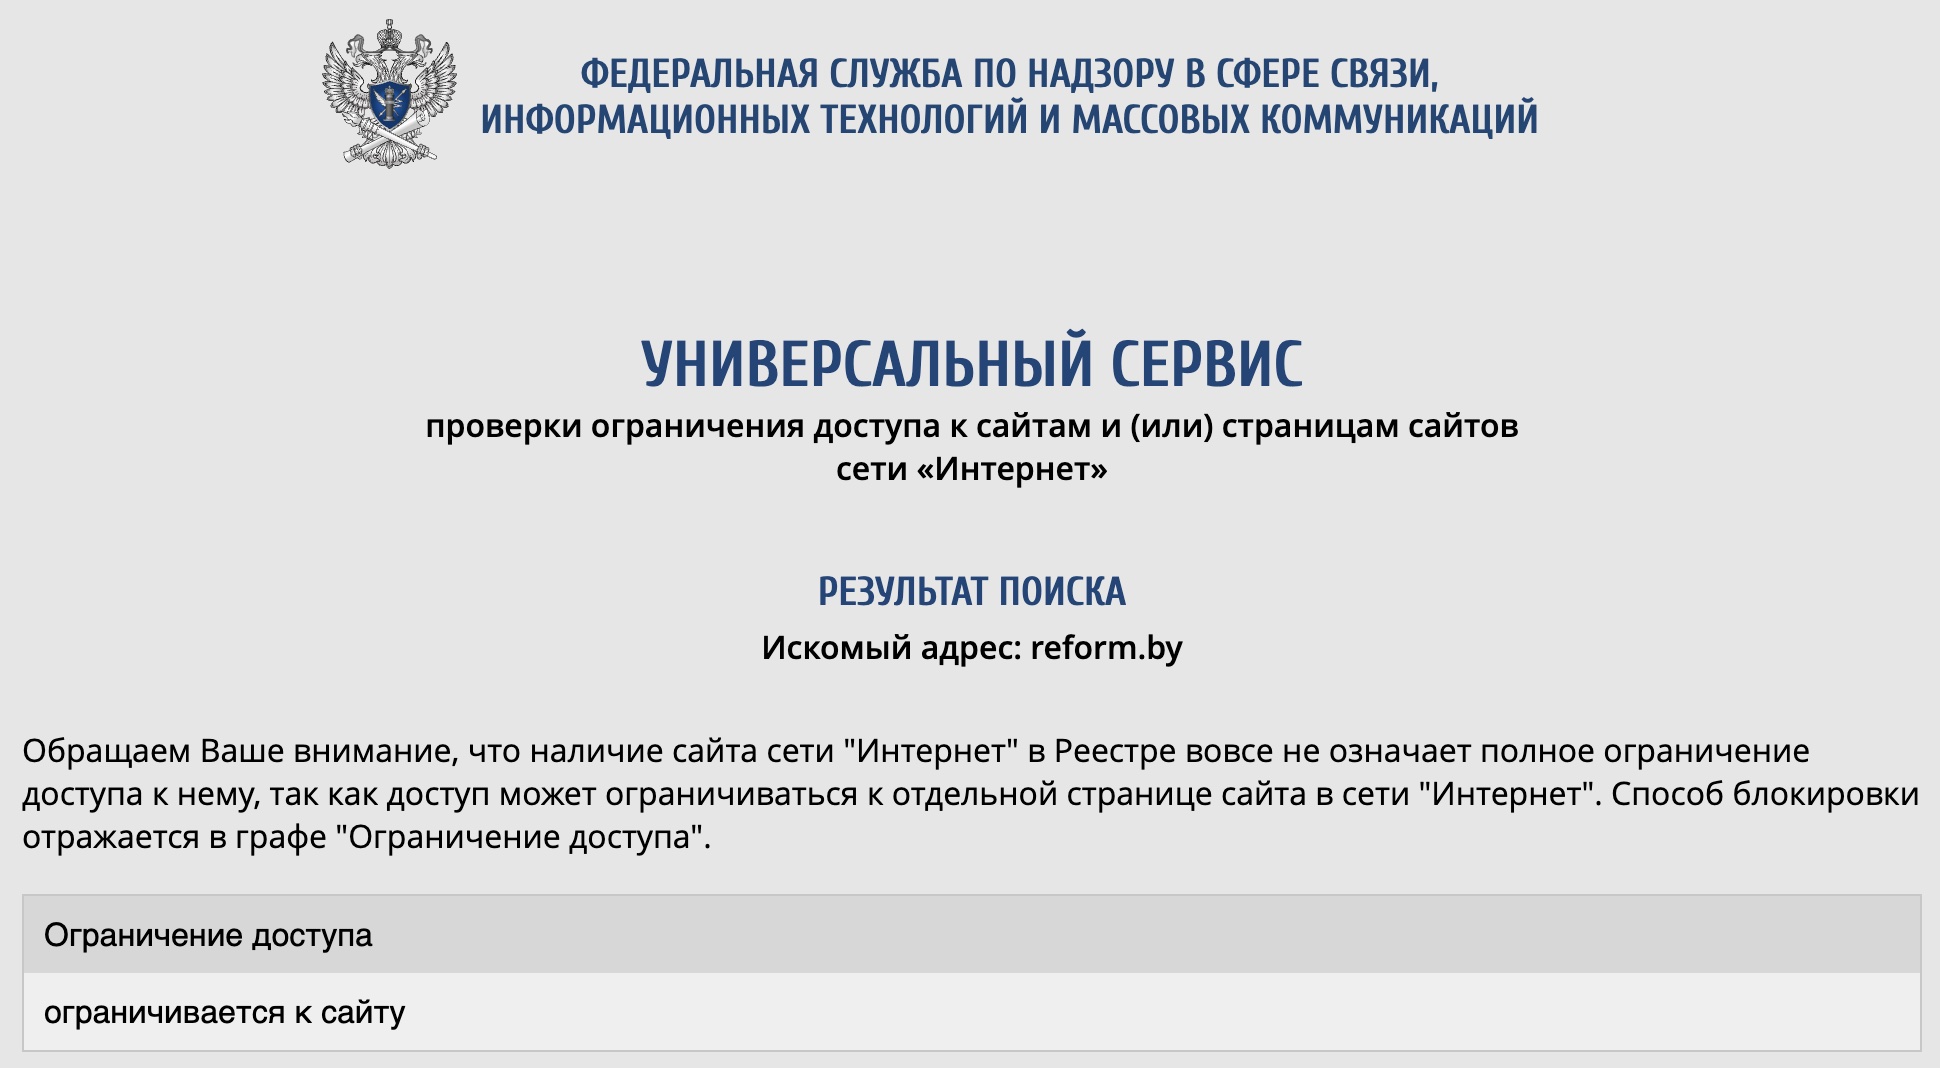 Роскомнадзор составил досье на Reform.by и заблокировал сайт в России